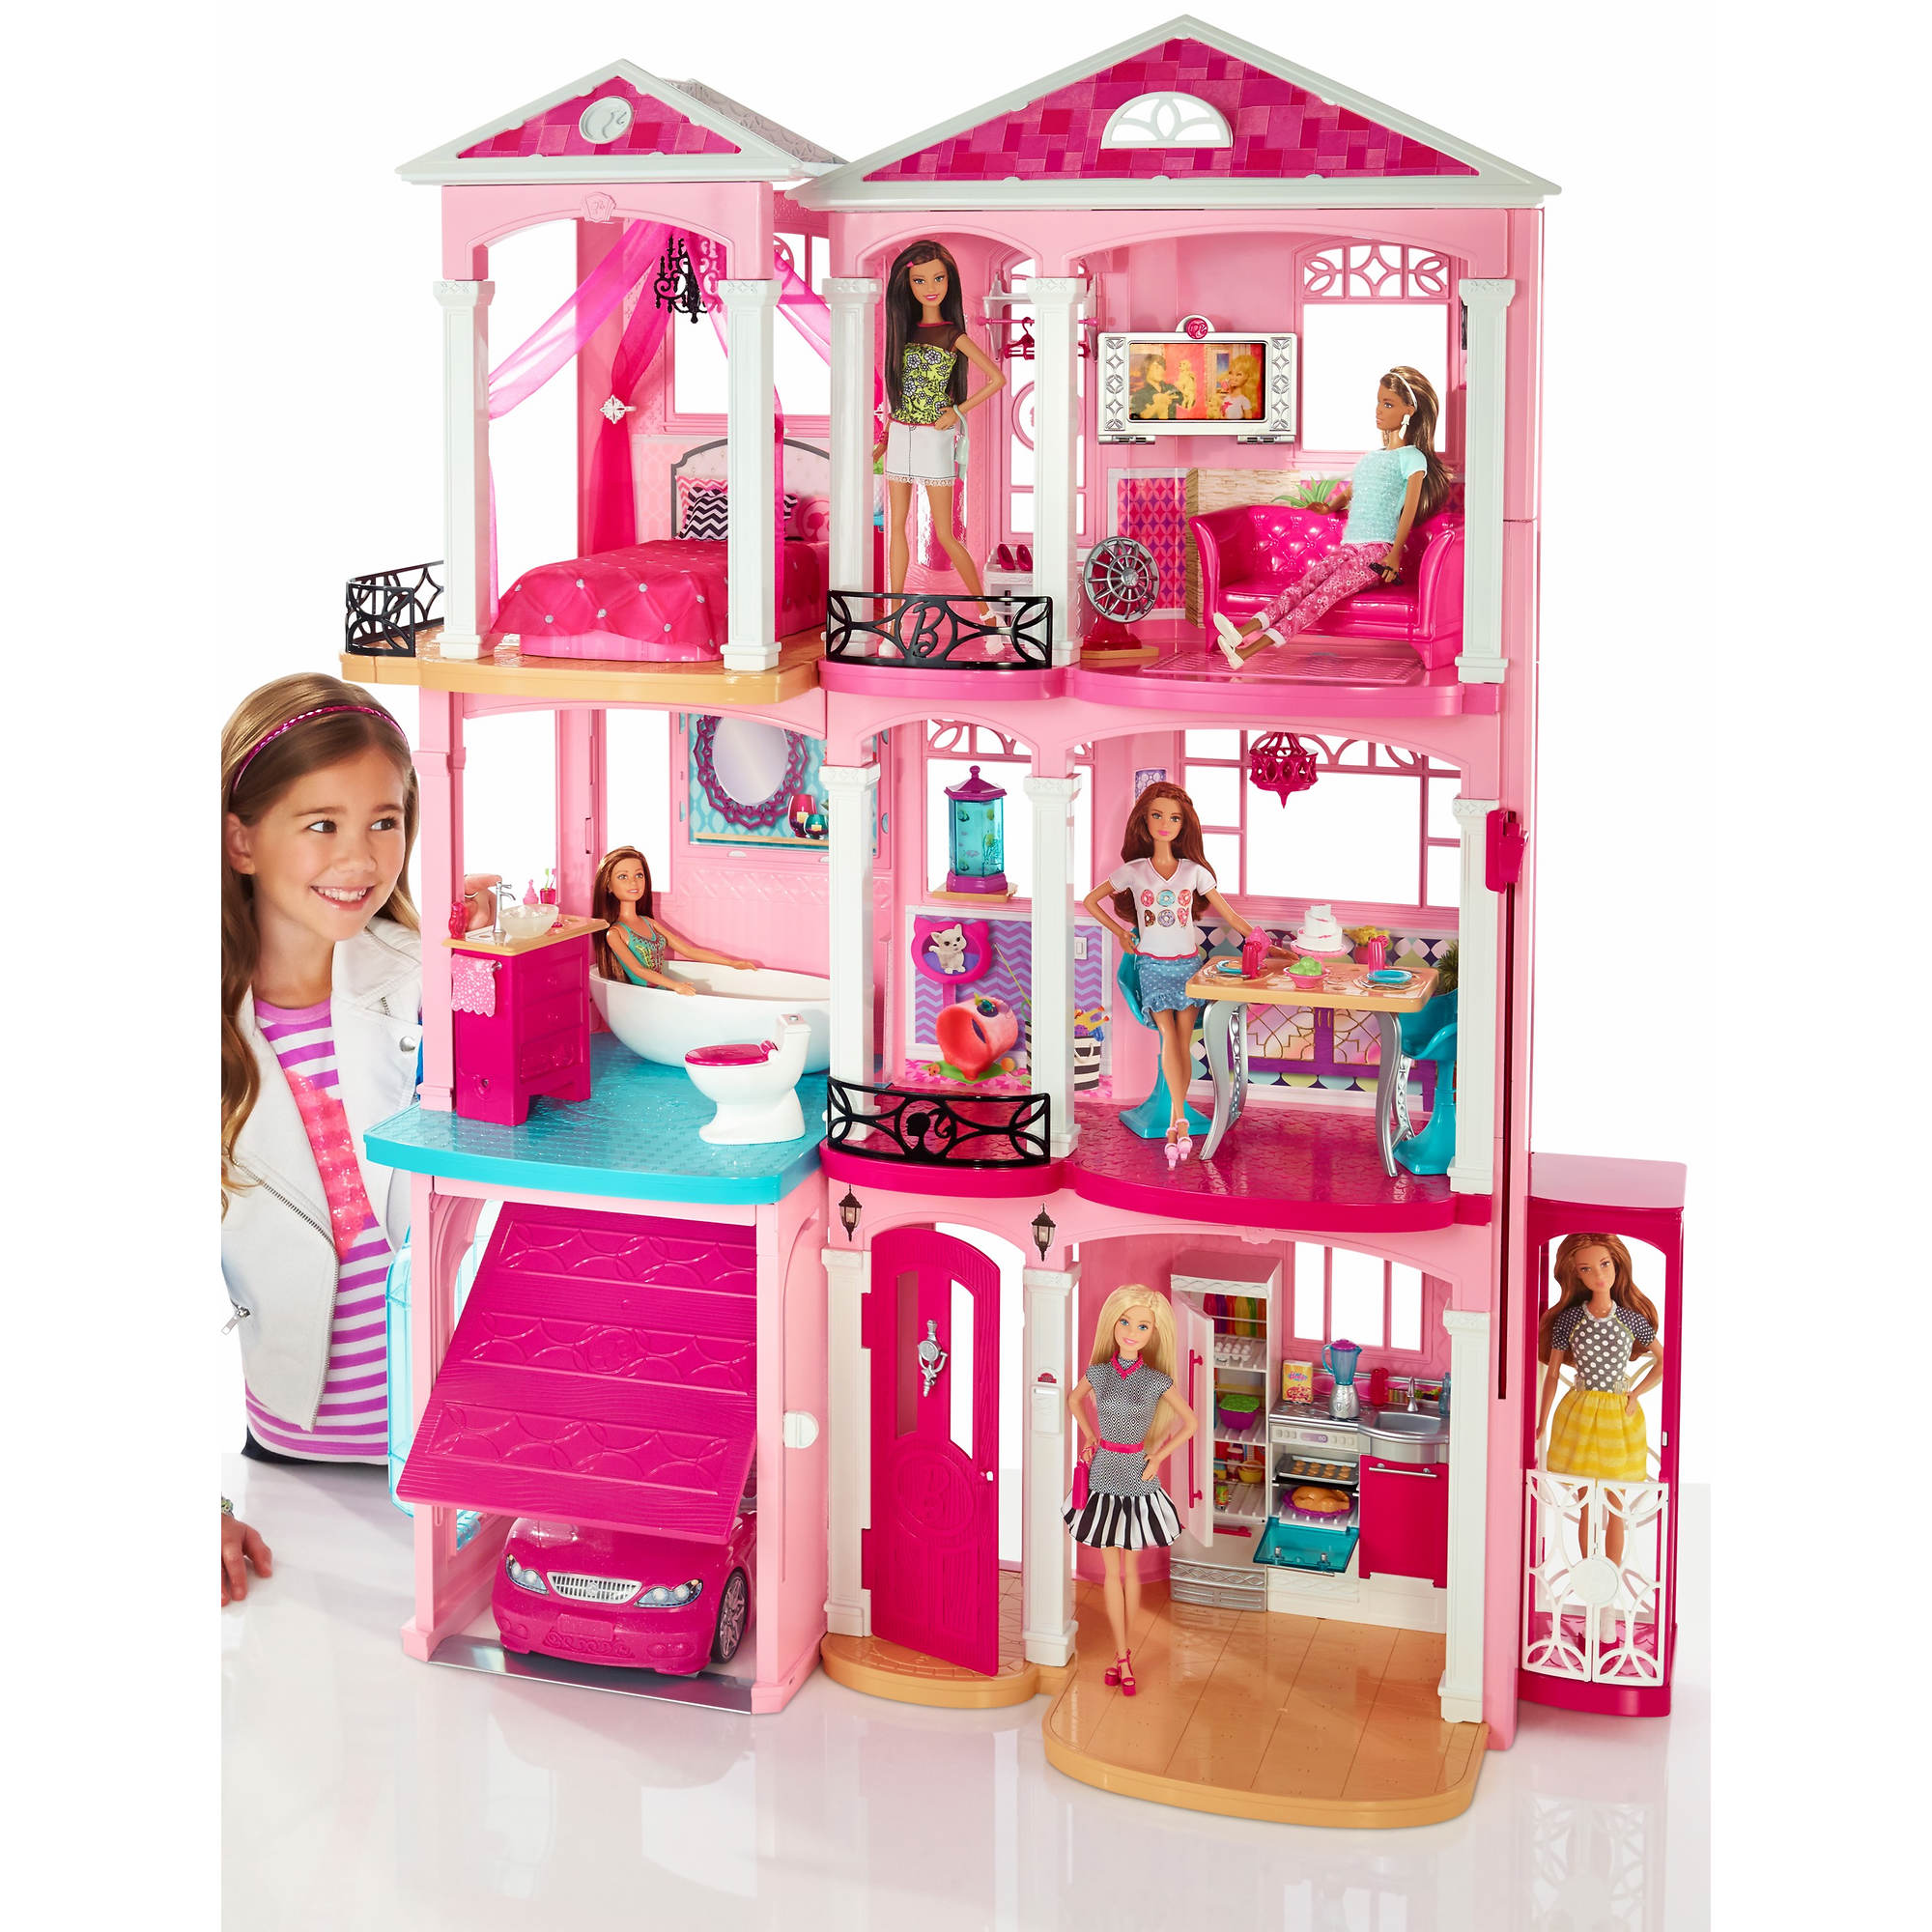 Барби дом 1. Набор Barbie дом мечты ffy84. Барби Dreamhouse кукла. Barbie новый дом мечты cjr47. Домик Барби Малибу.